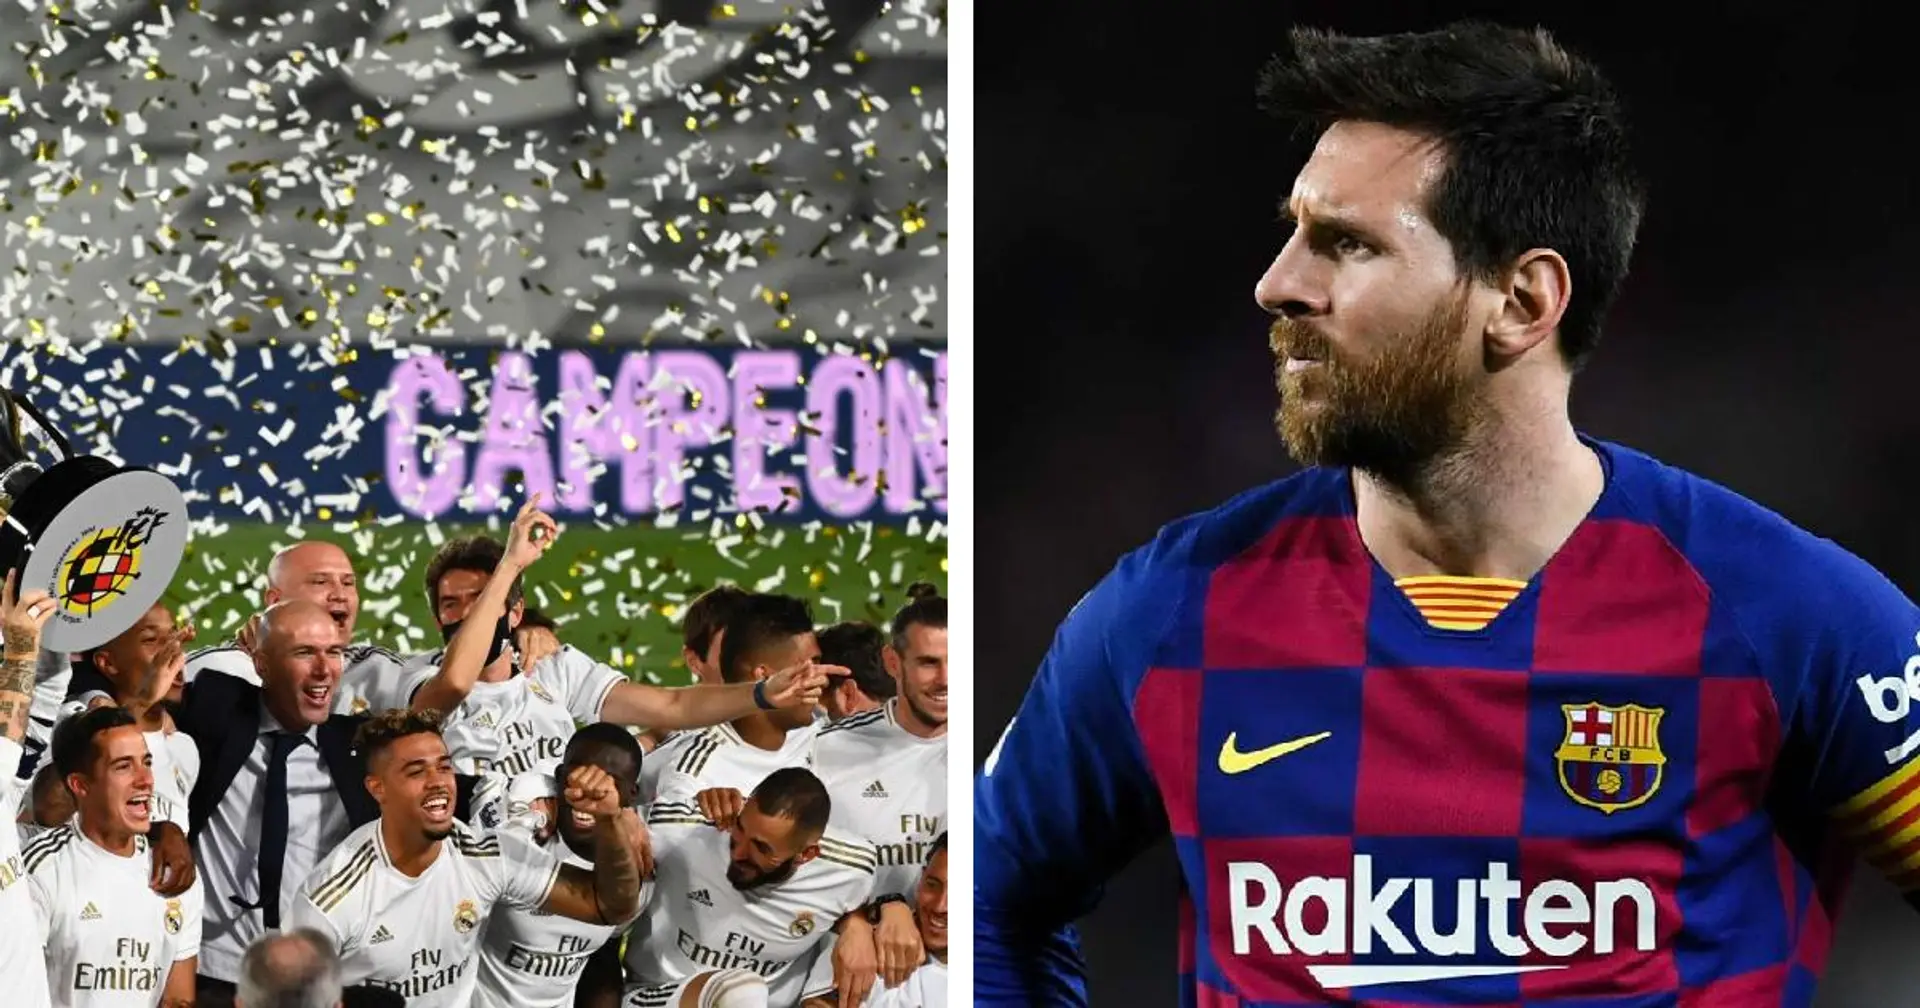 Notre victoire, leur défaite: comment les 4 dernières victoires de Madrid en Liga ont entraîné des pertes dévastatrices pour Barcelone